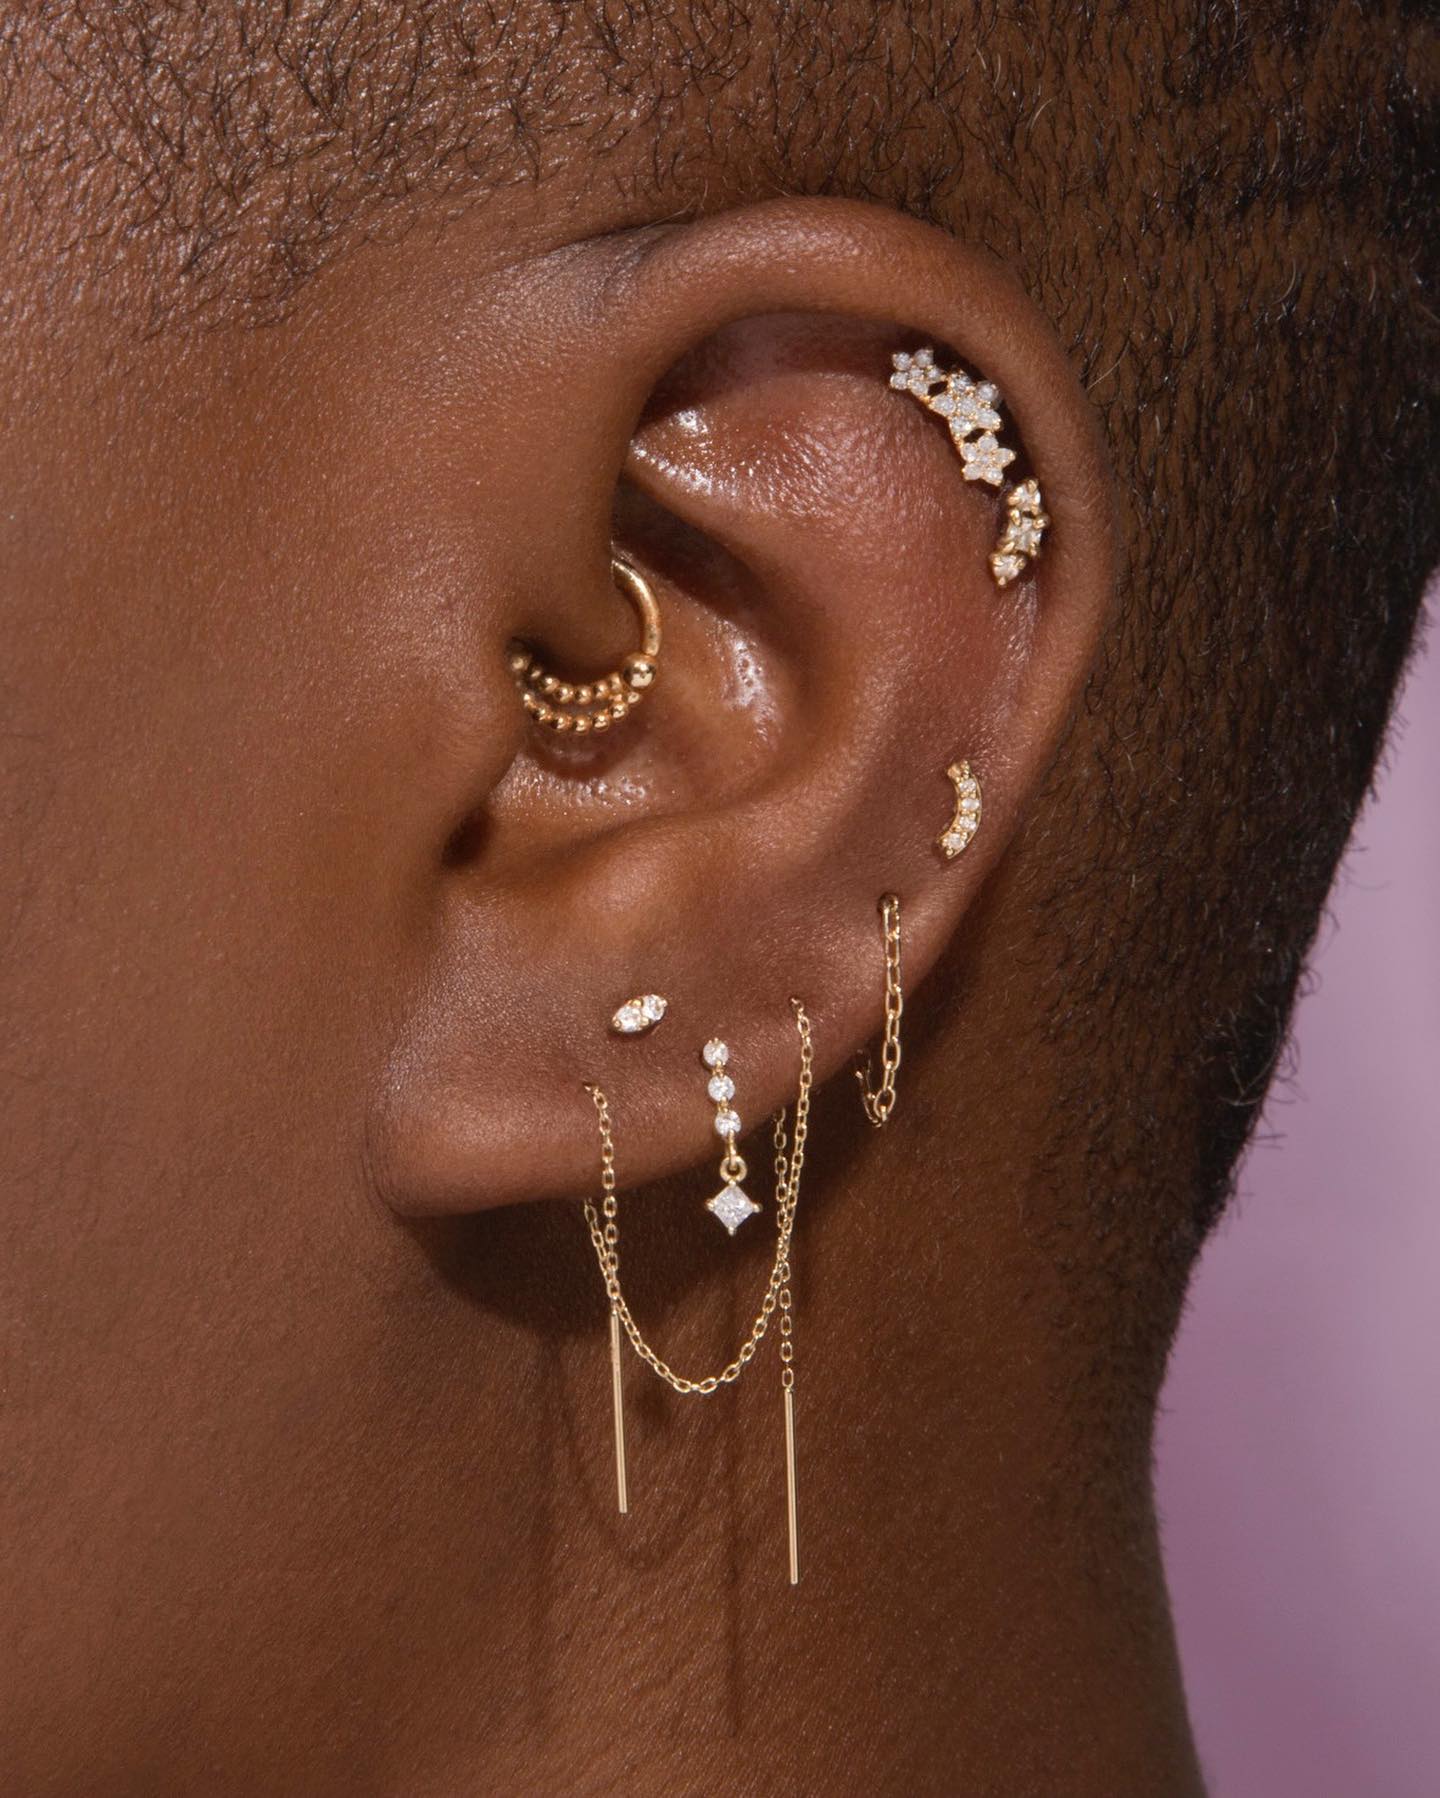 Dossiê do piercing na orelha: o que saber antes de aderir à moda